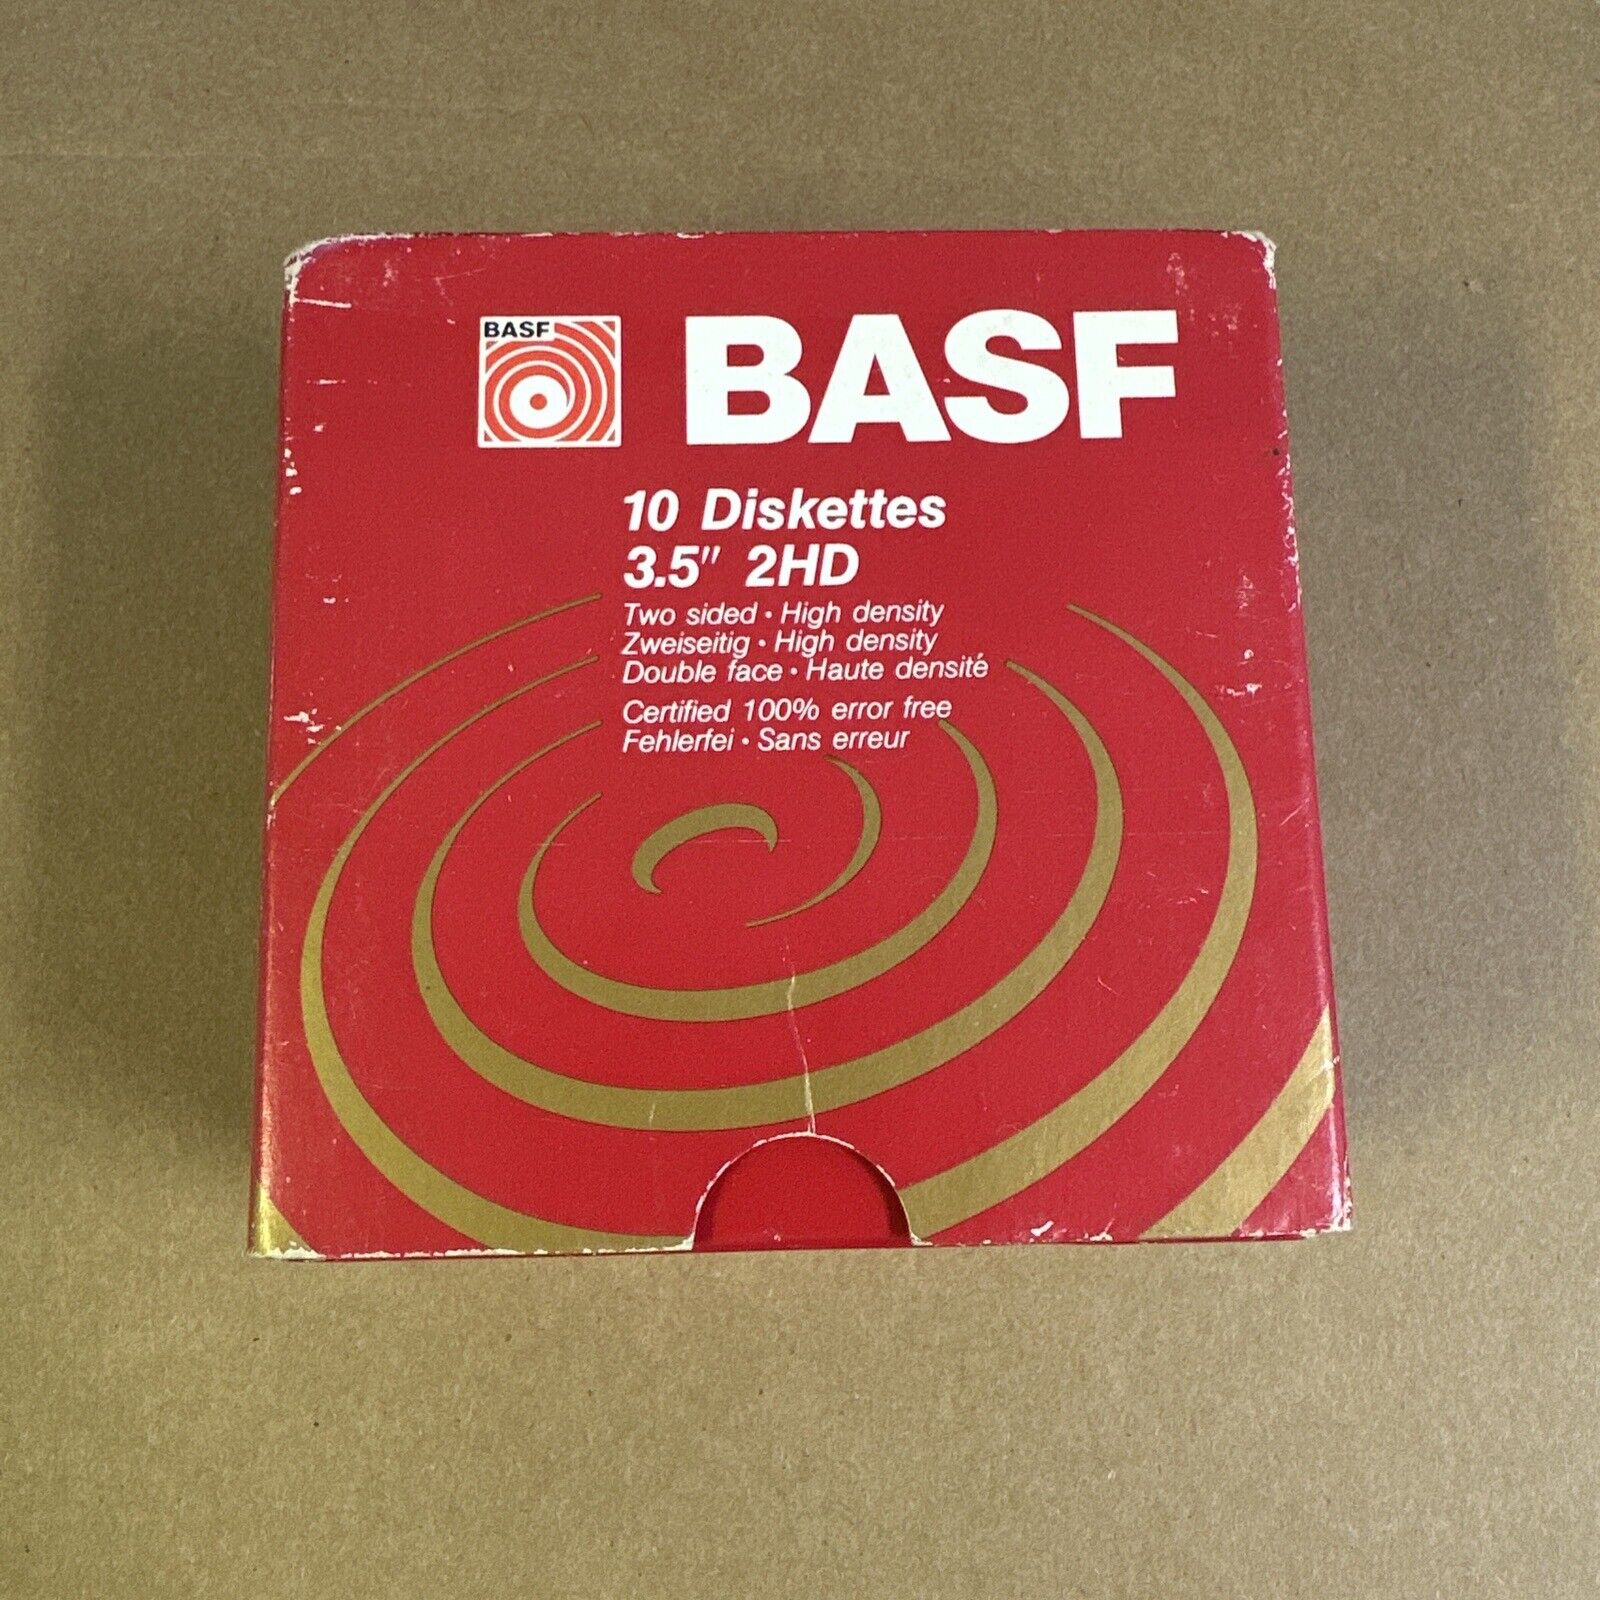 BASF 2HD 10 Floppy Diskettes 3.5 inch